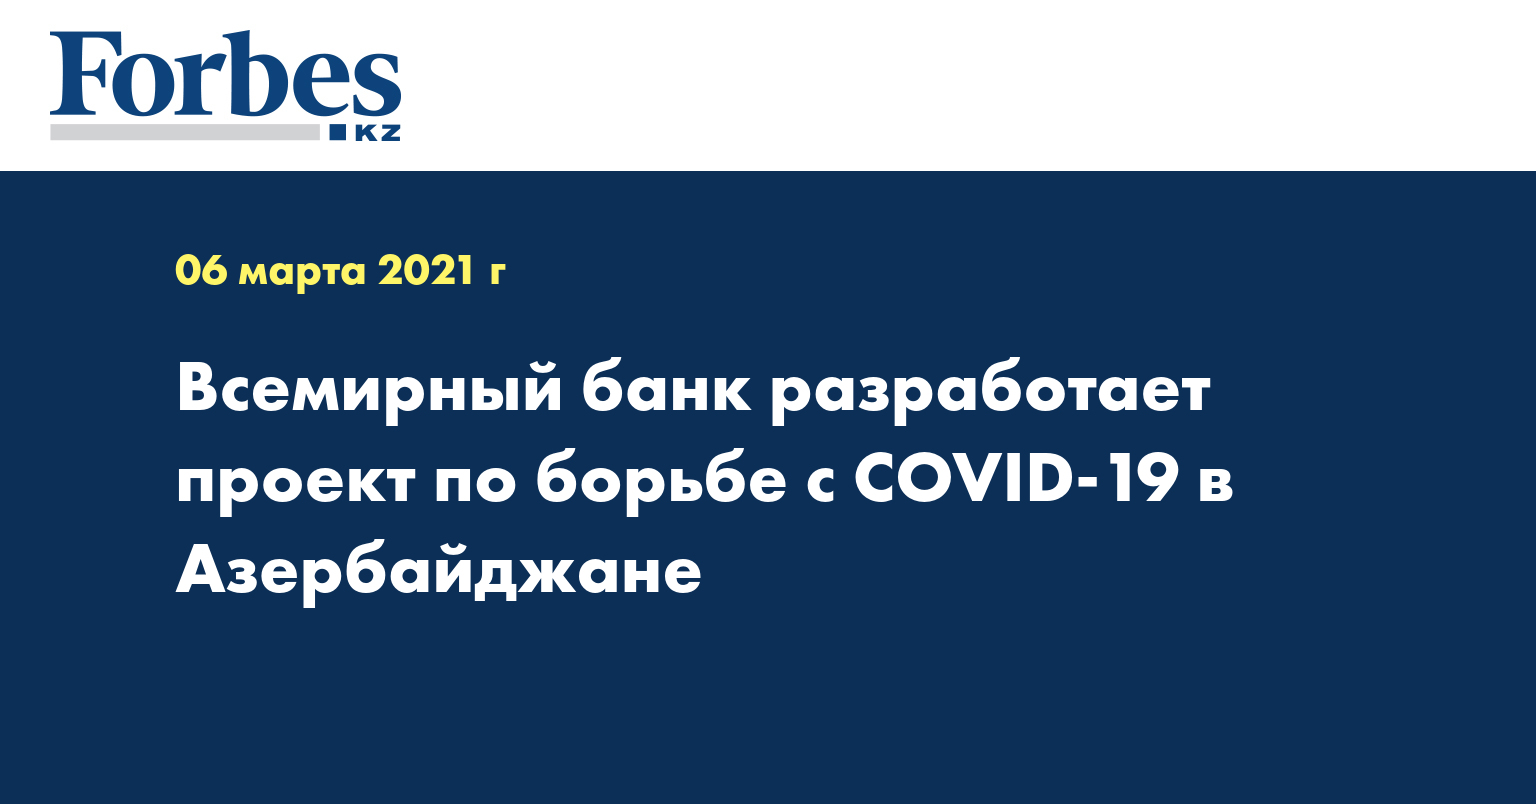 Всемирный банк разработает проект по борьбе с COVID-19 в Азербайджане